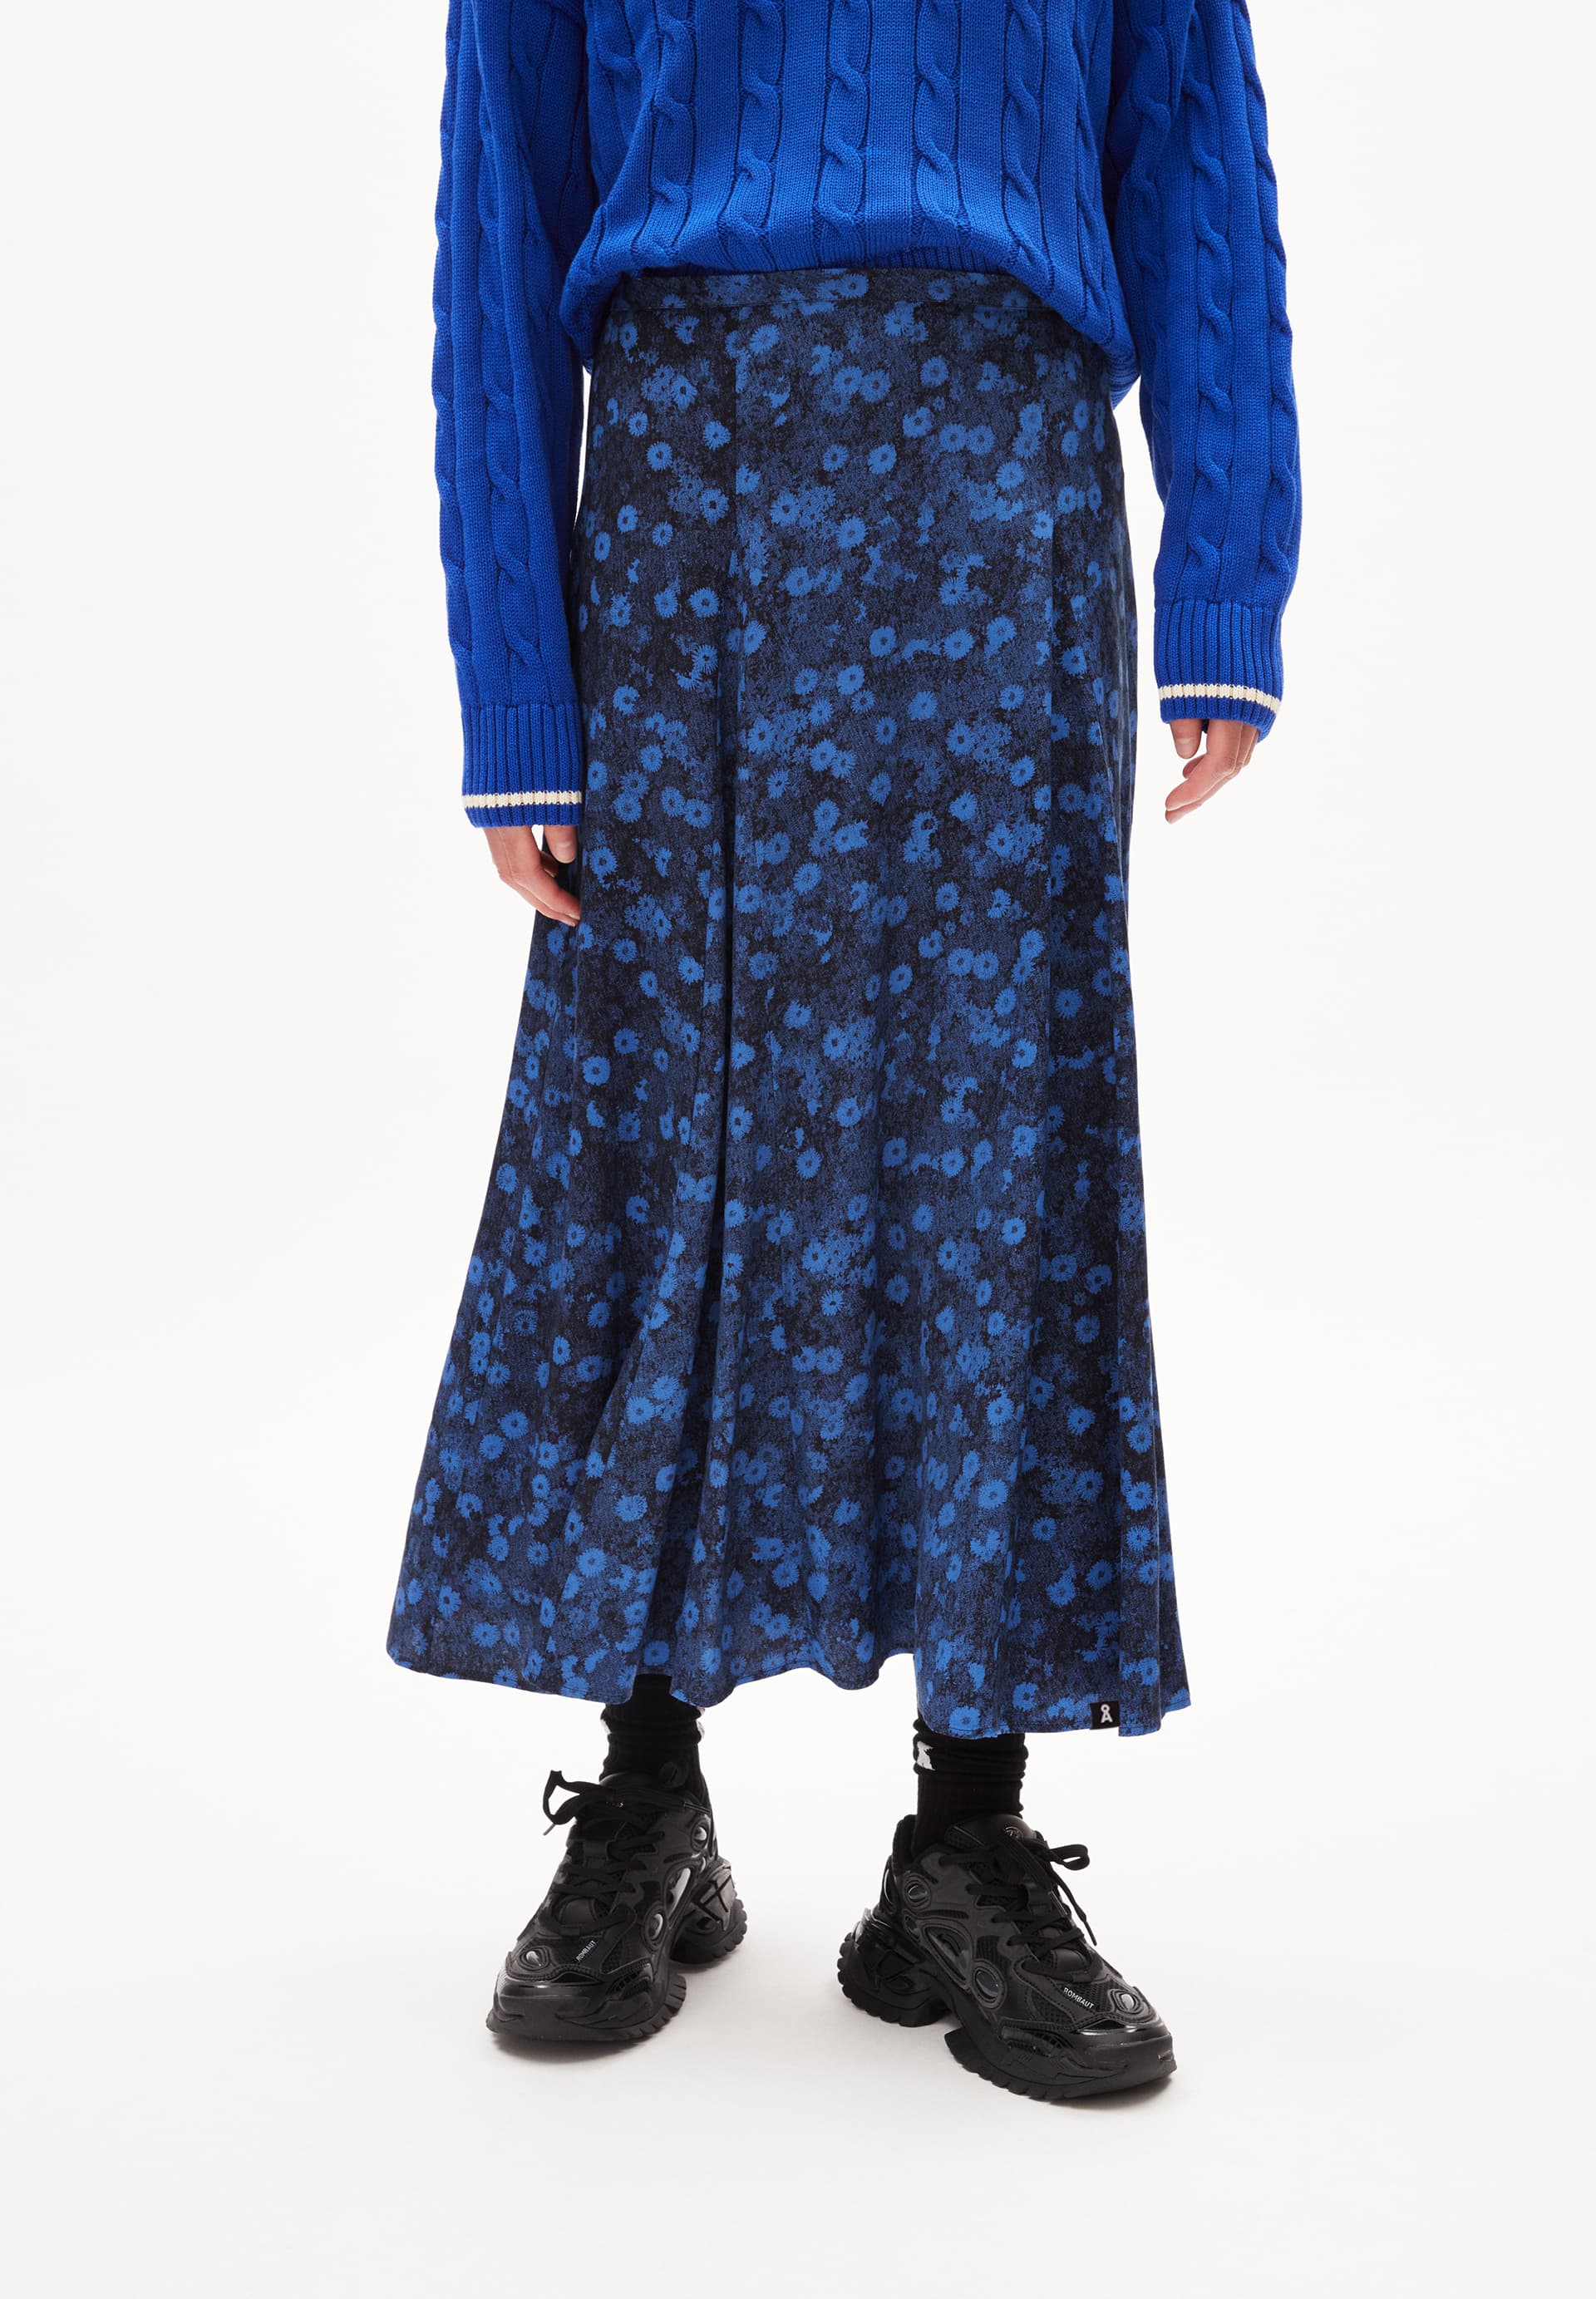 MIKASAAMI MILLES FLEURS Woven Skirt Regular Fit made of LENZING™ ECOVERO™ Viscose